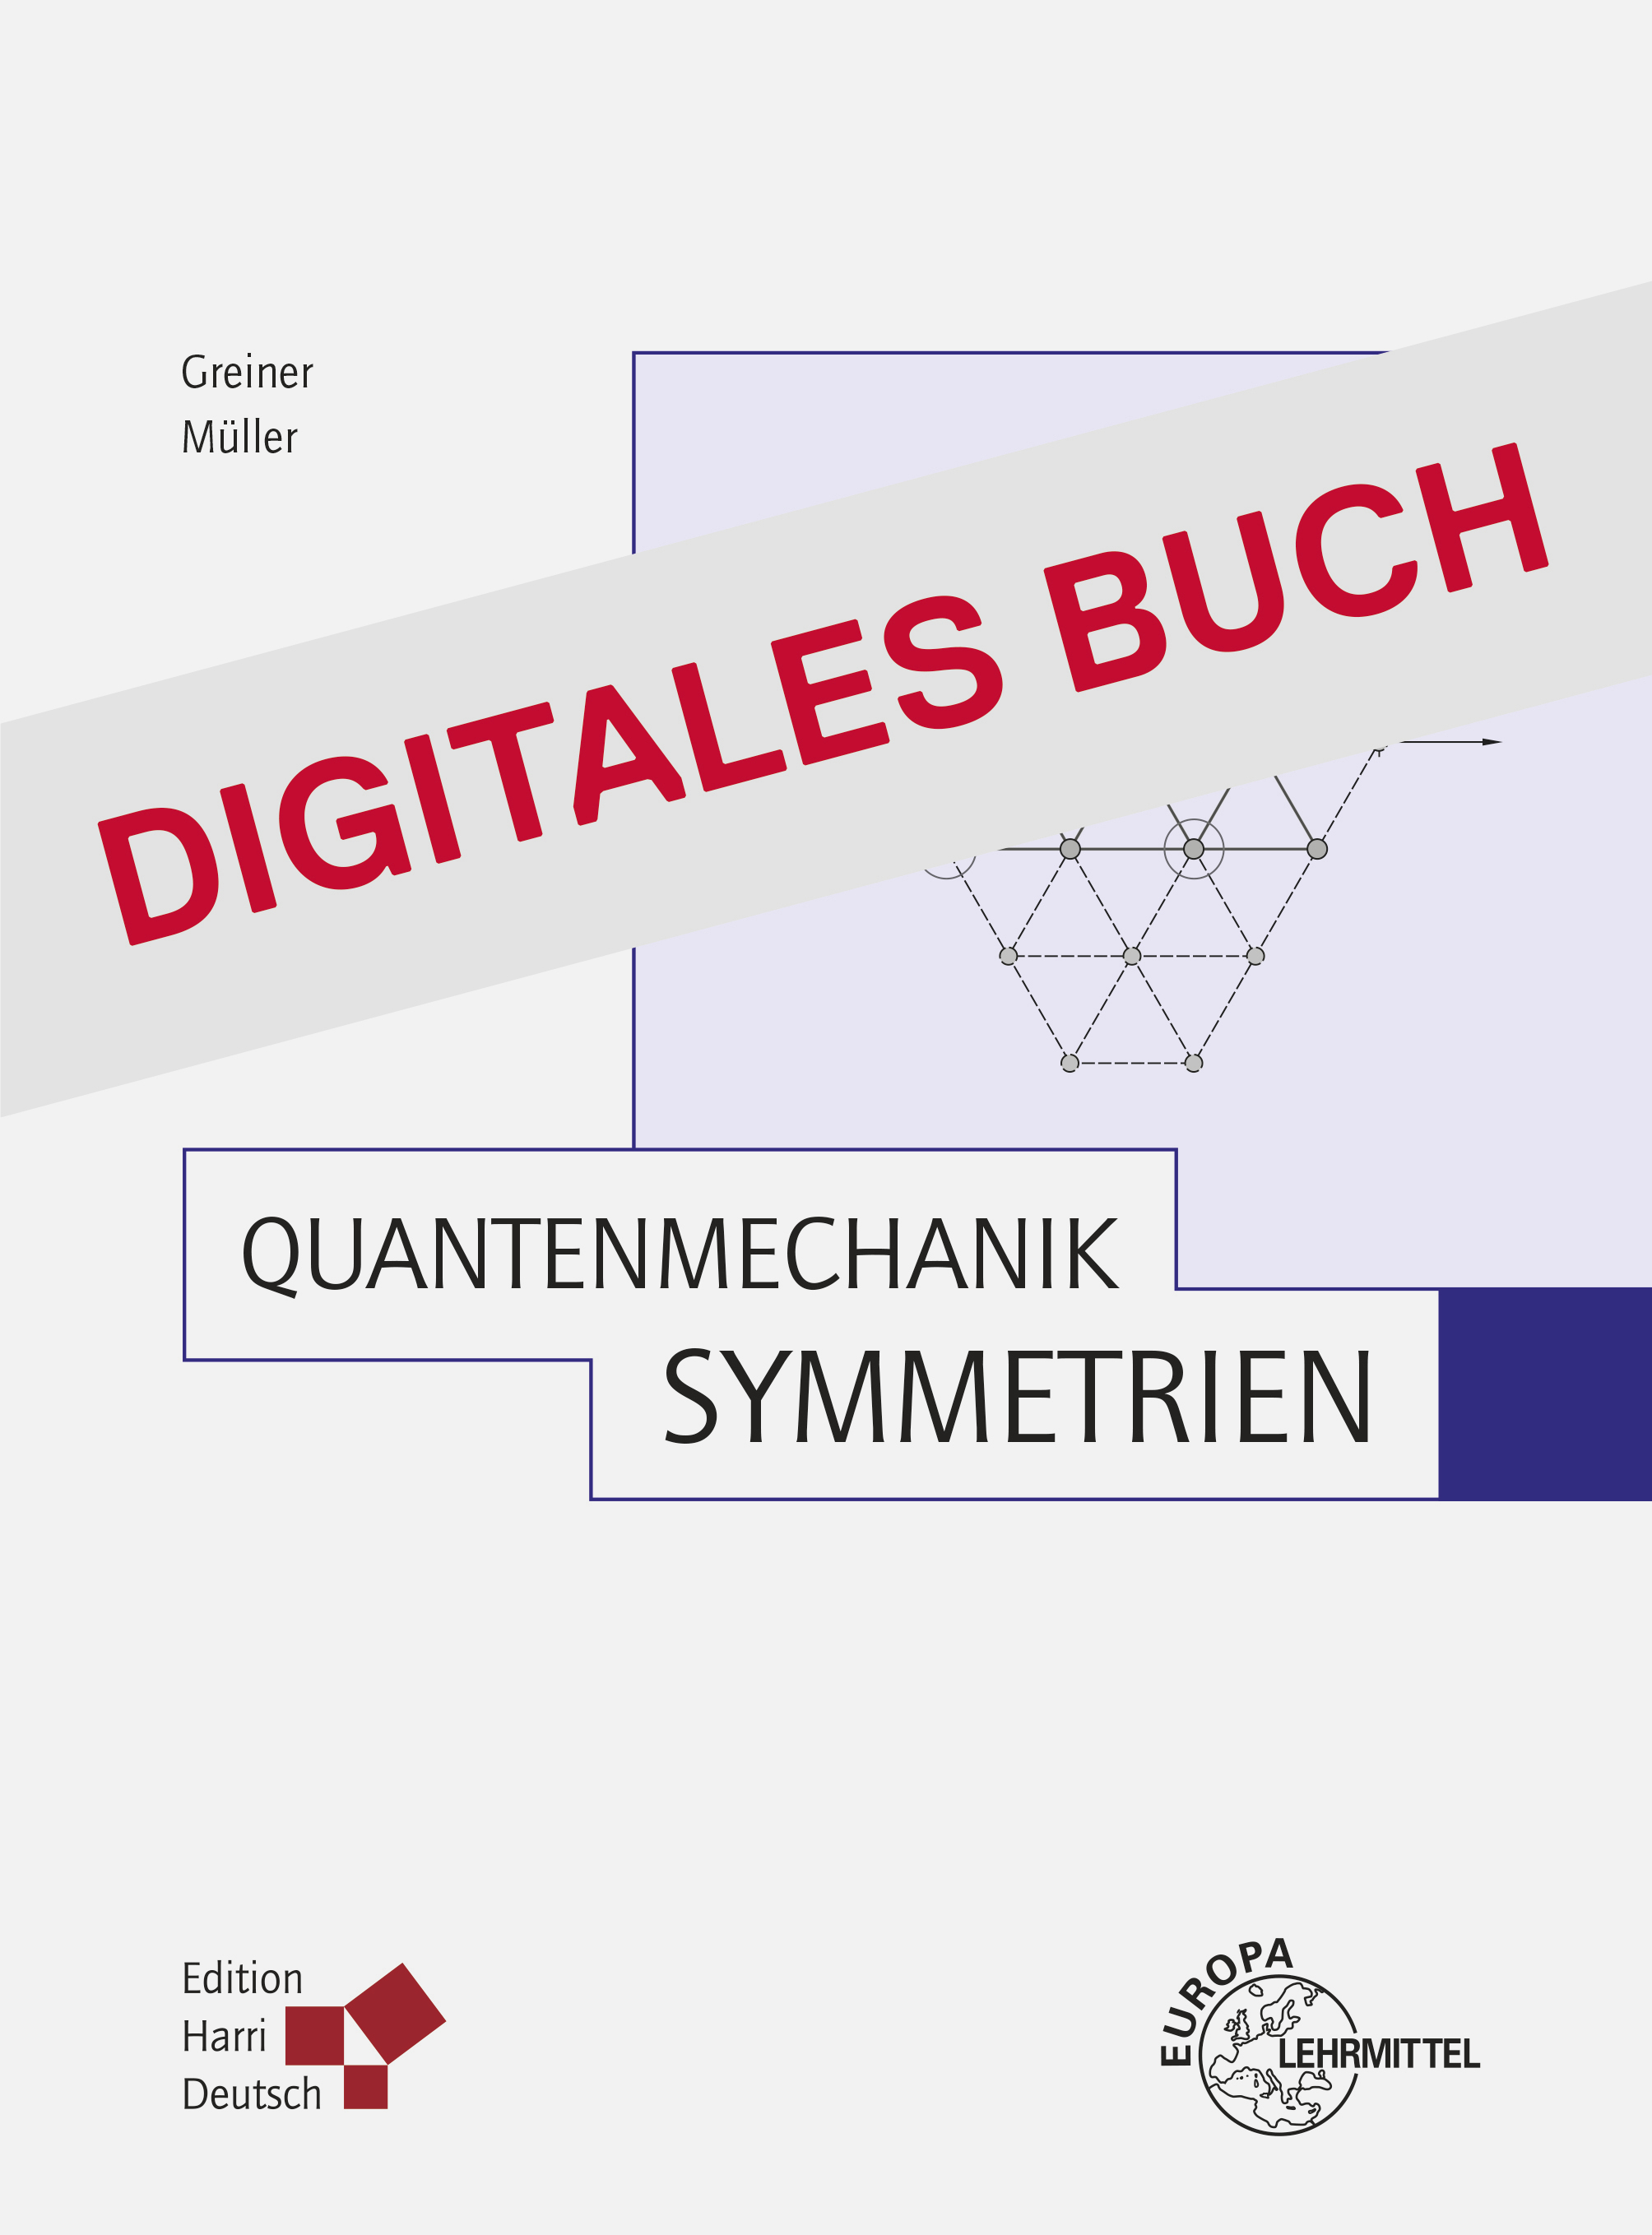 Quantenmechanik: Symmetrien - Digitales Buch